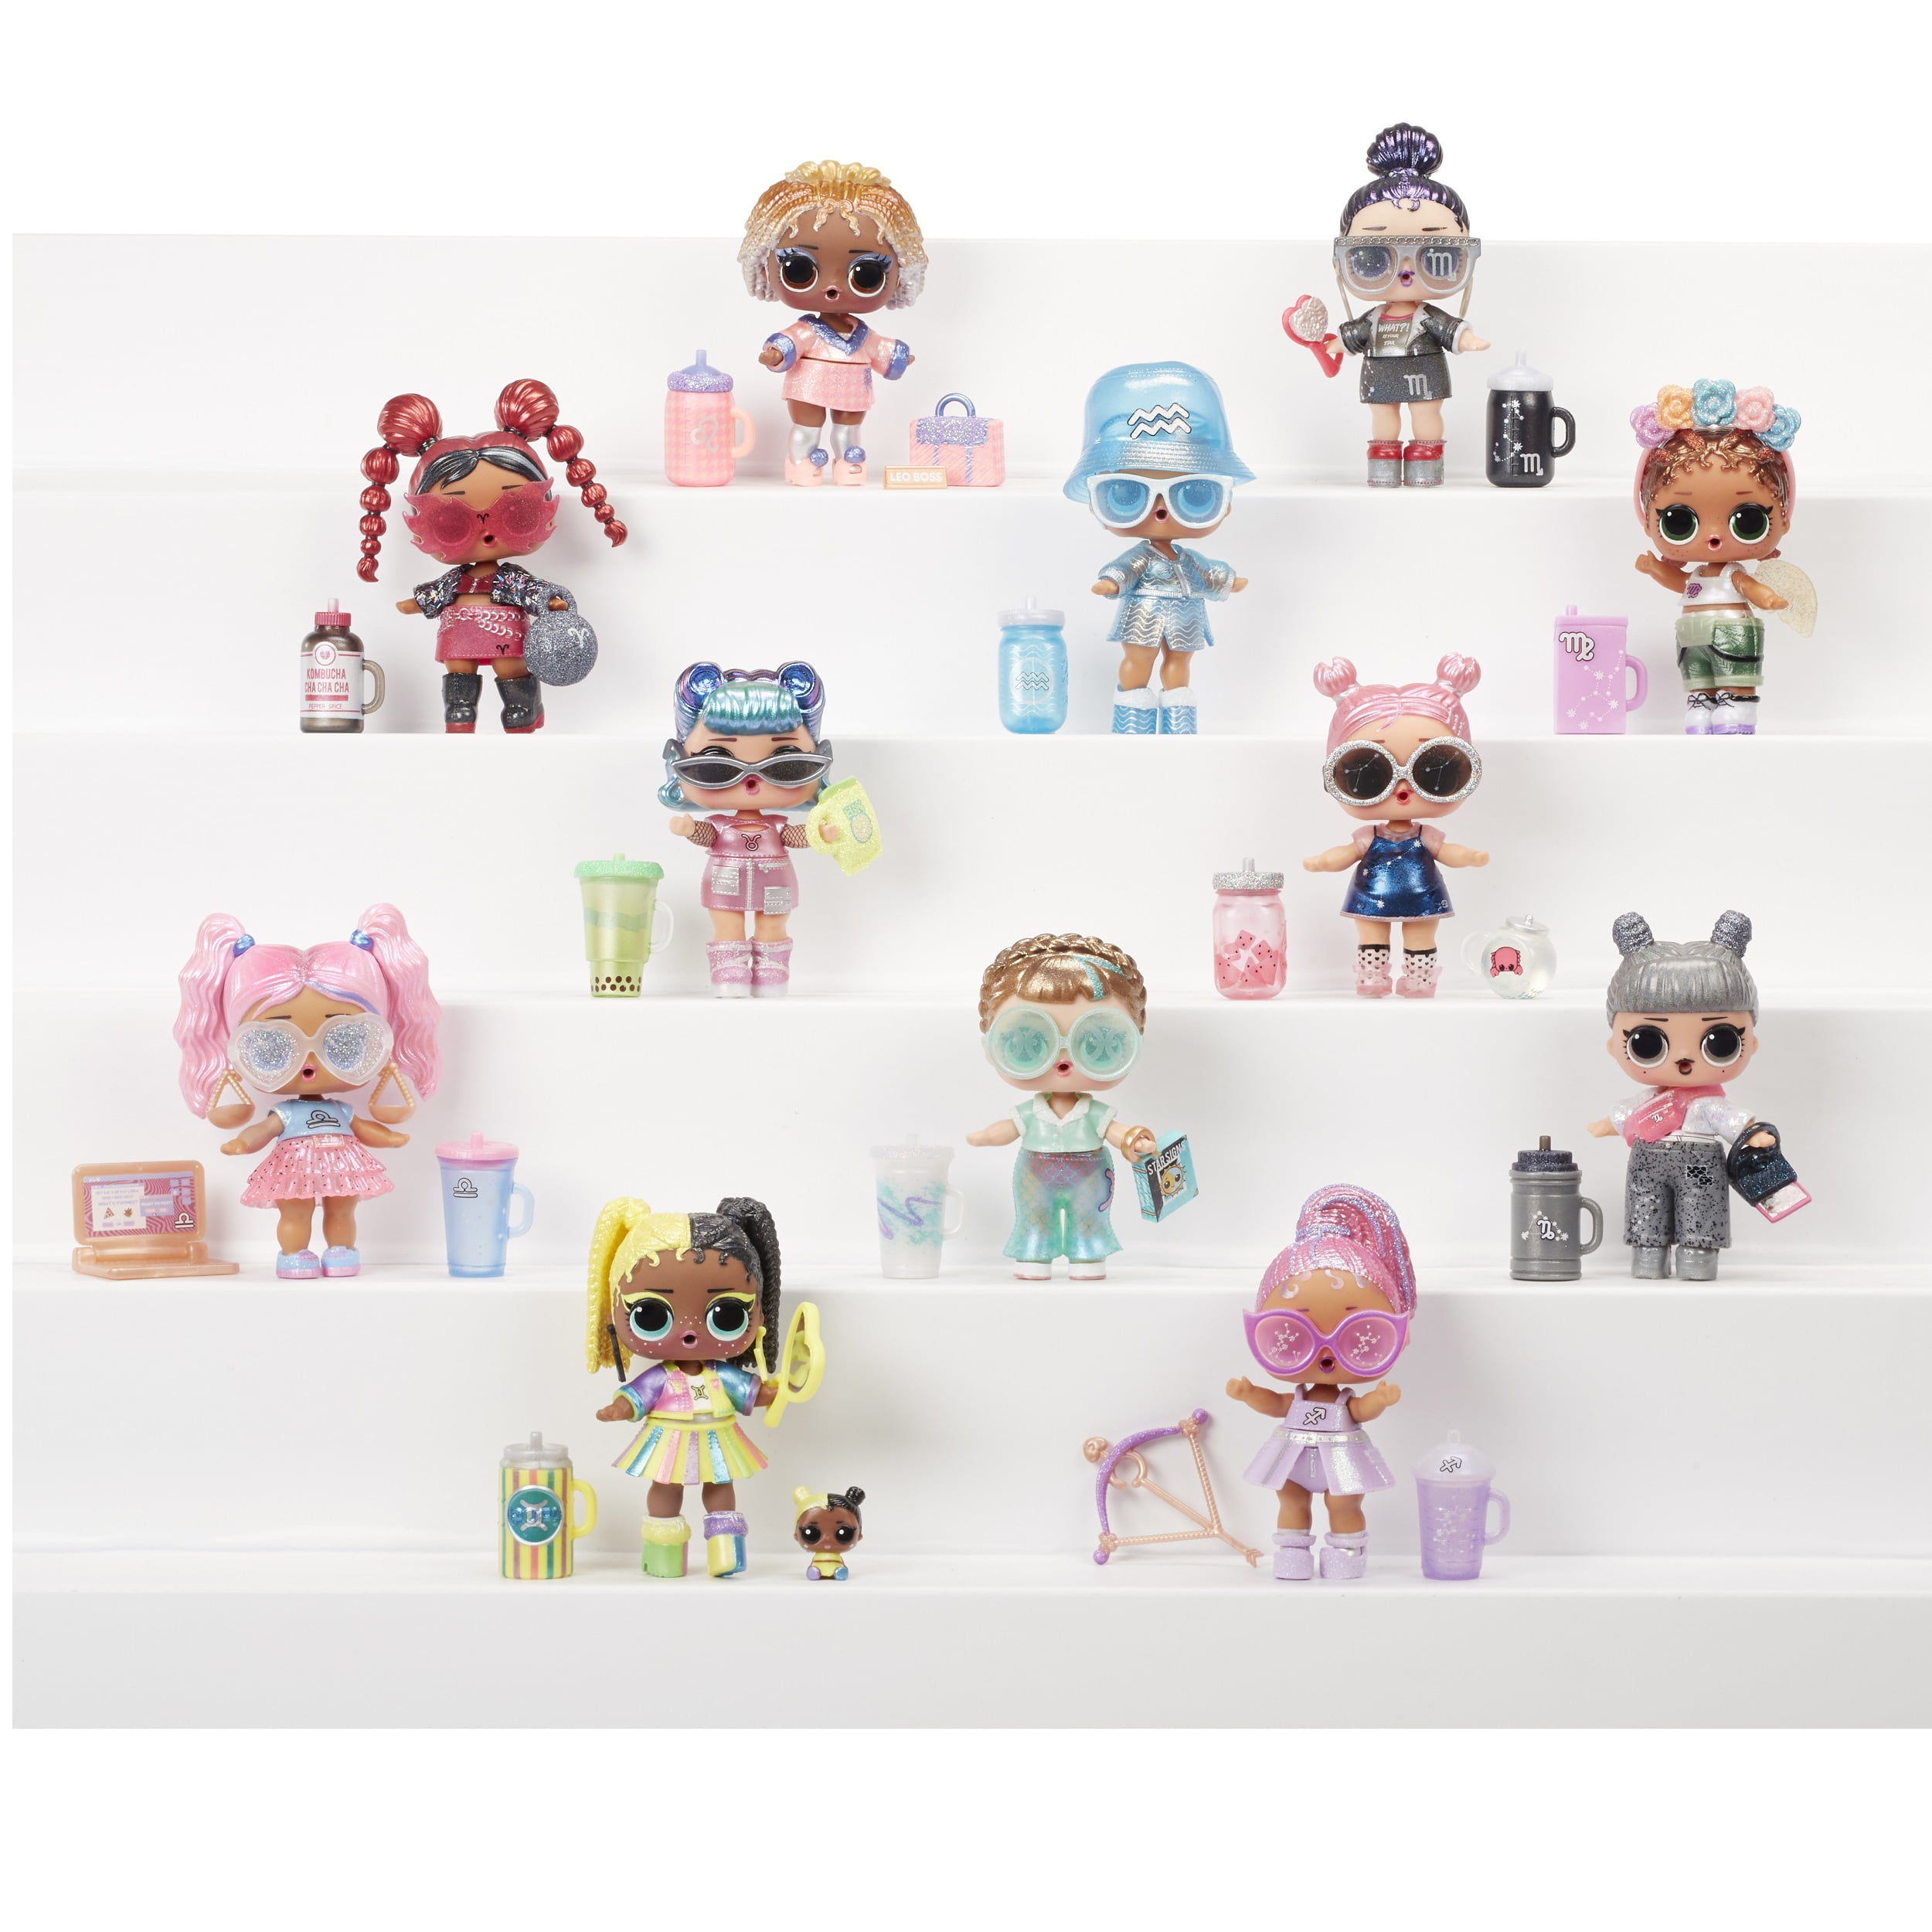 L.O.L Present Surprise Doll with 8 Surprises Multicolored for sale online Surprise